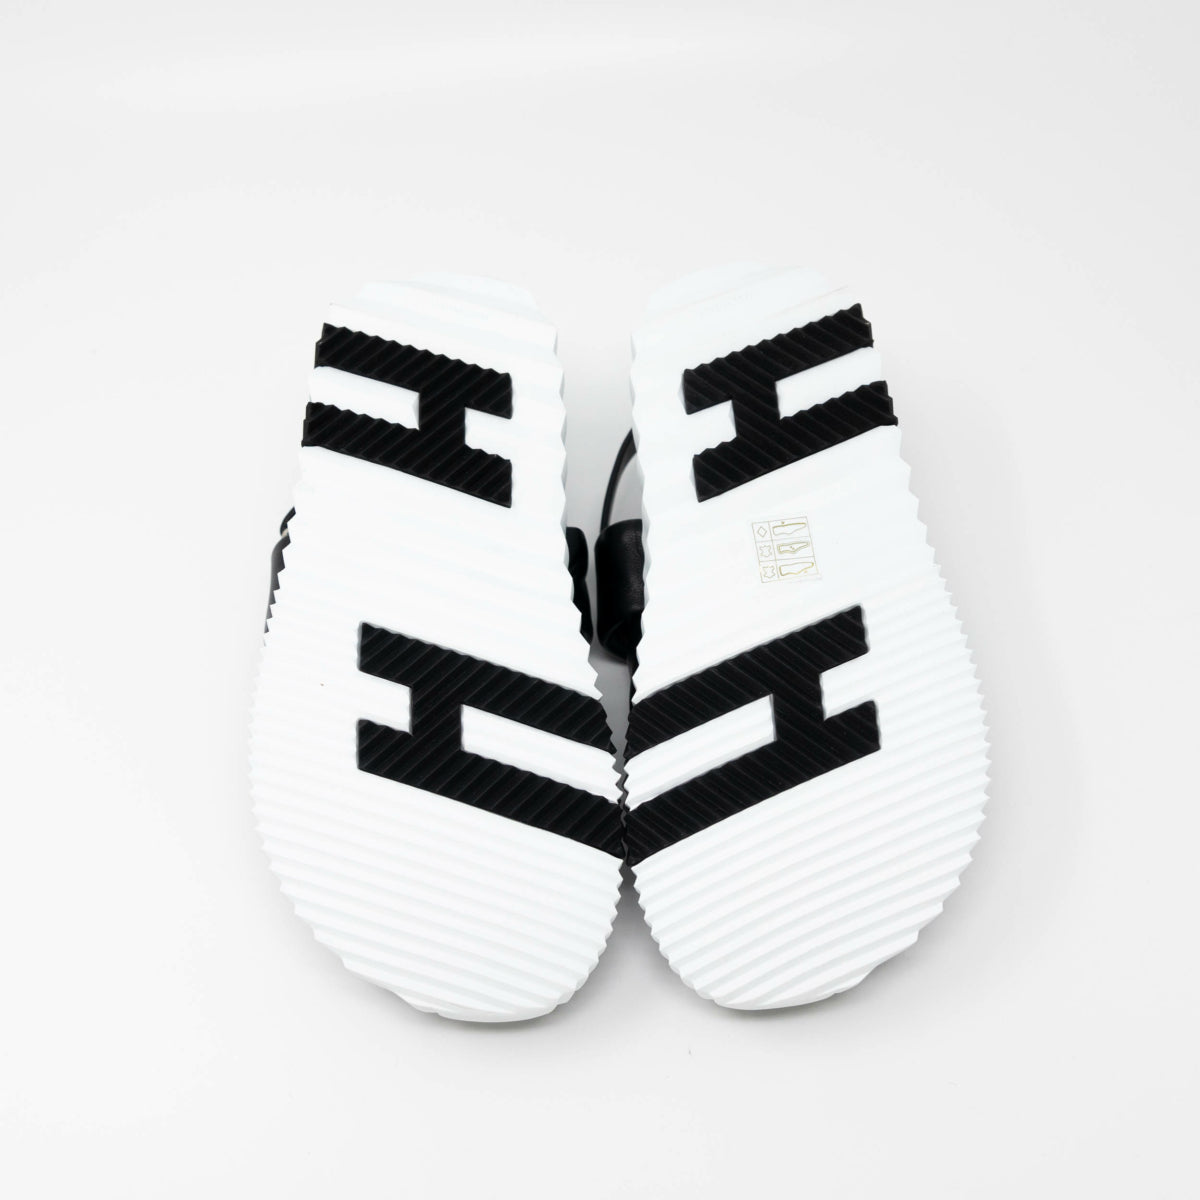 Hermes Noir Electric Sandals 35.5